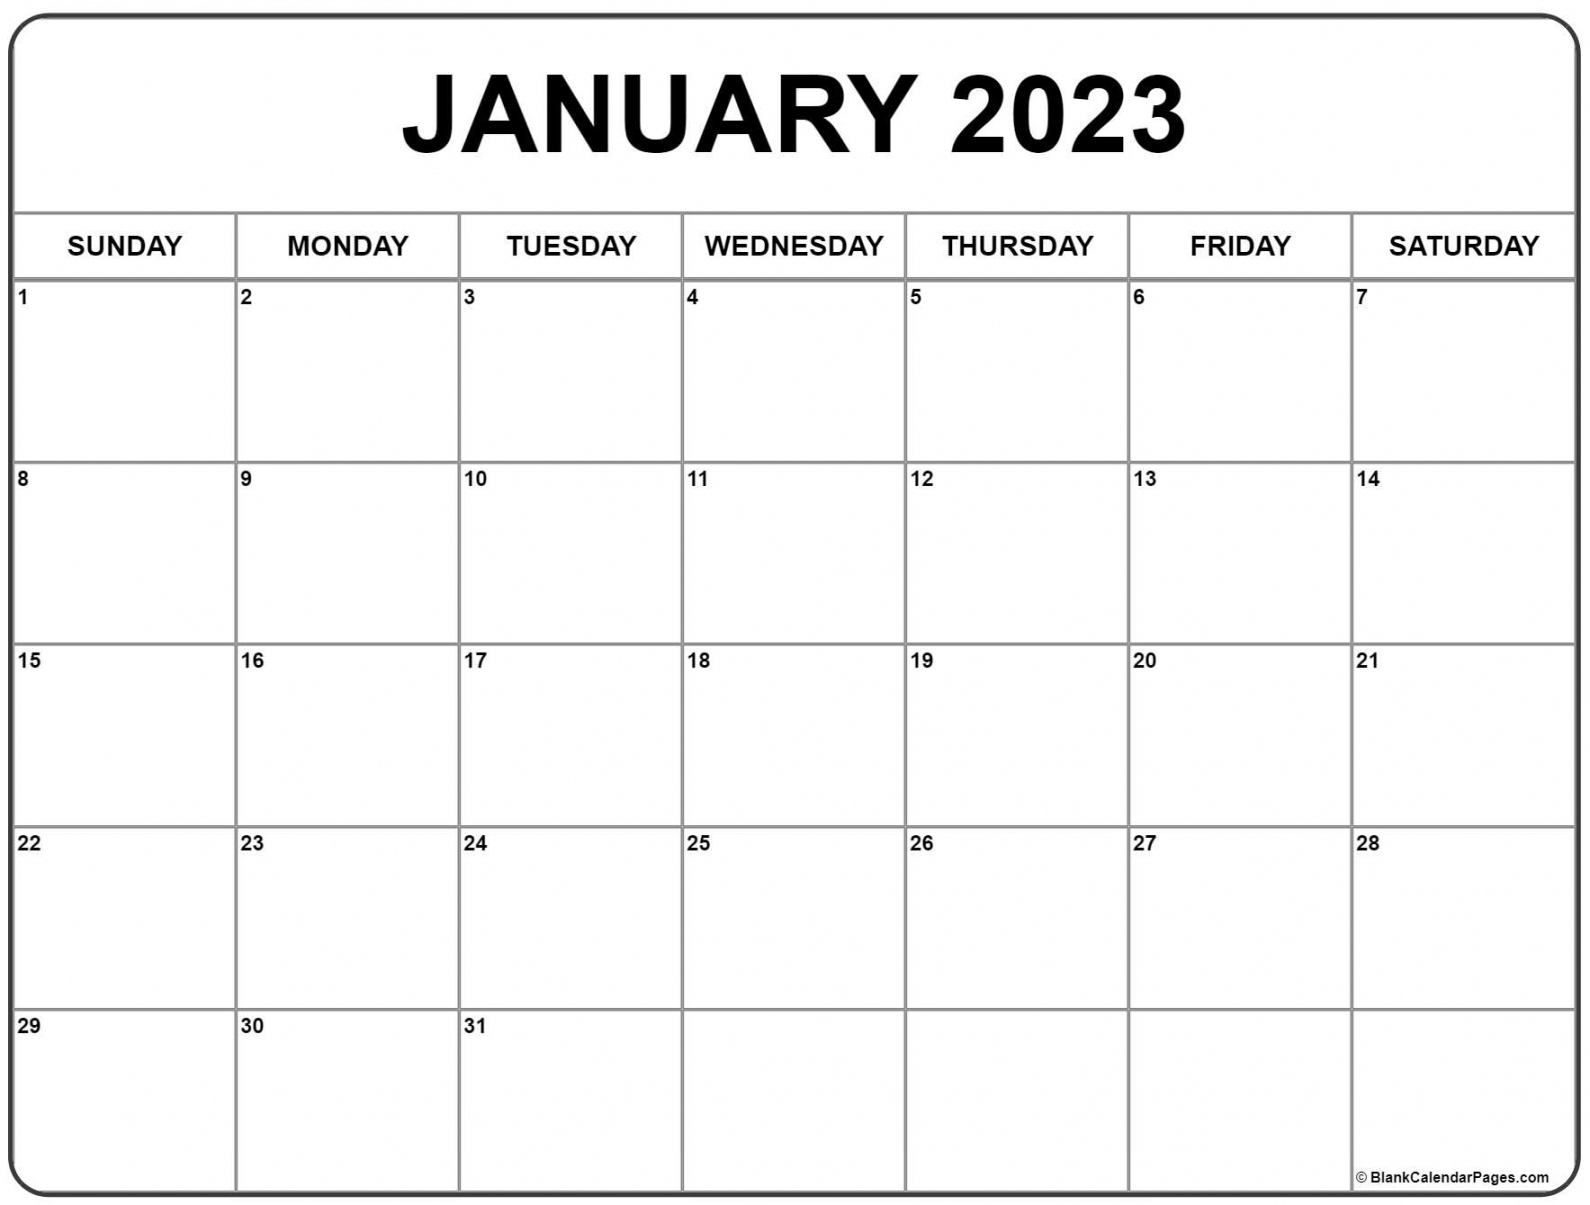 January 2023 Calendar Printable Free - Printable - January  calendar  free printable calendar